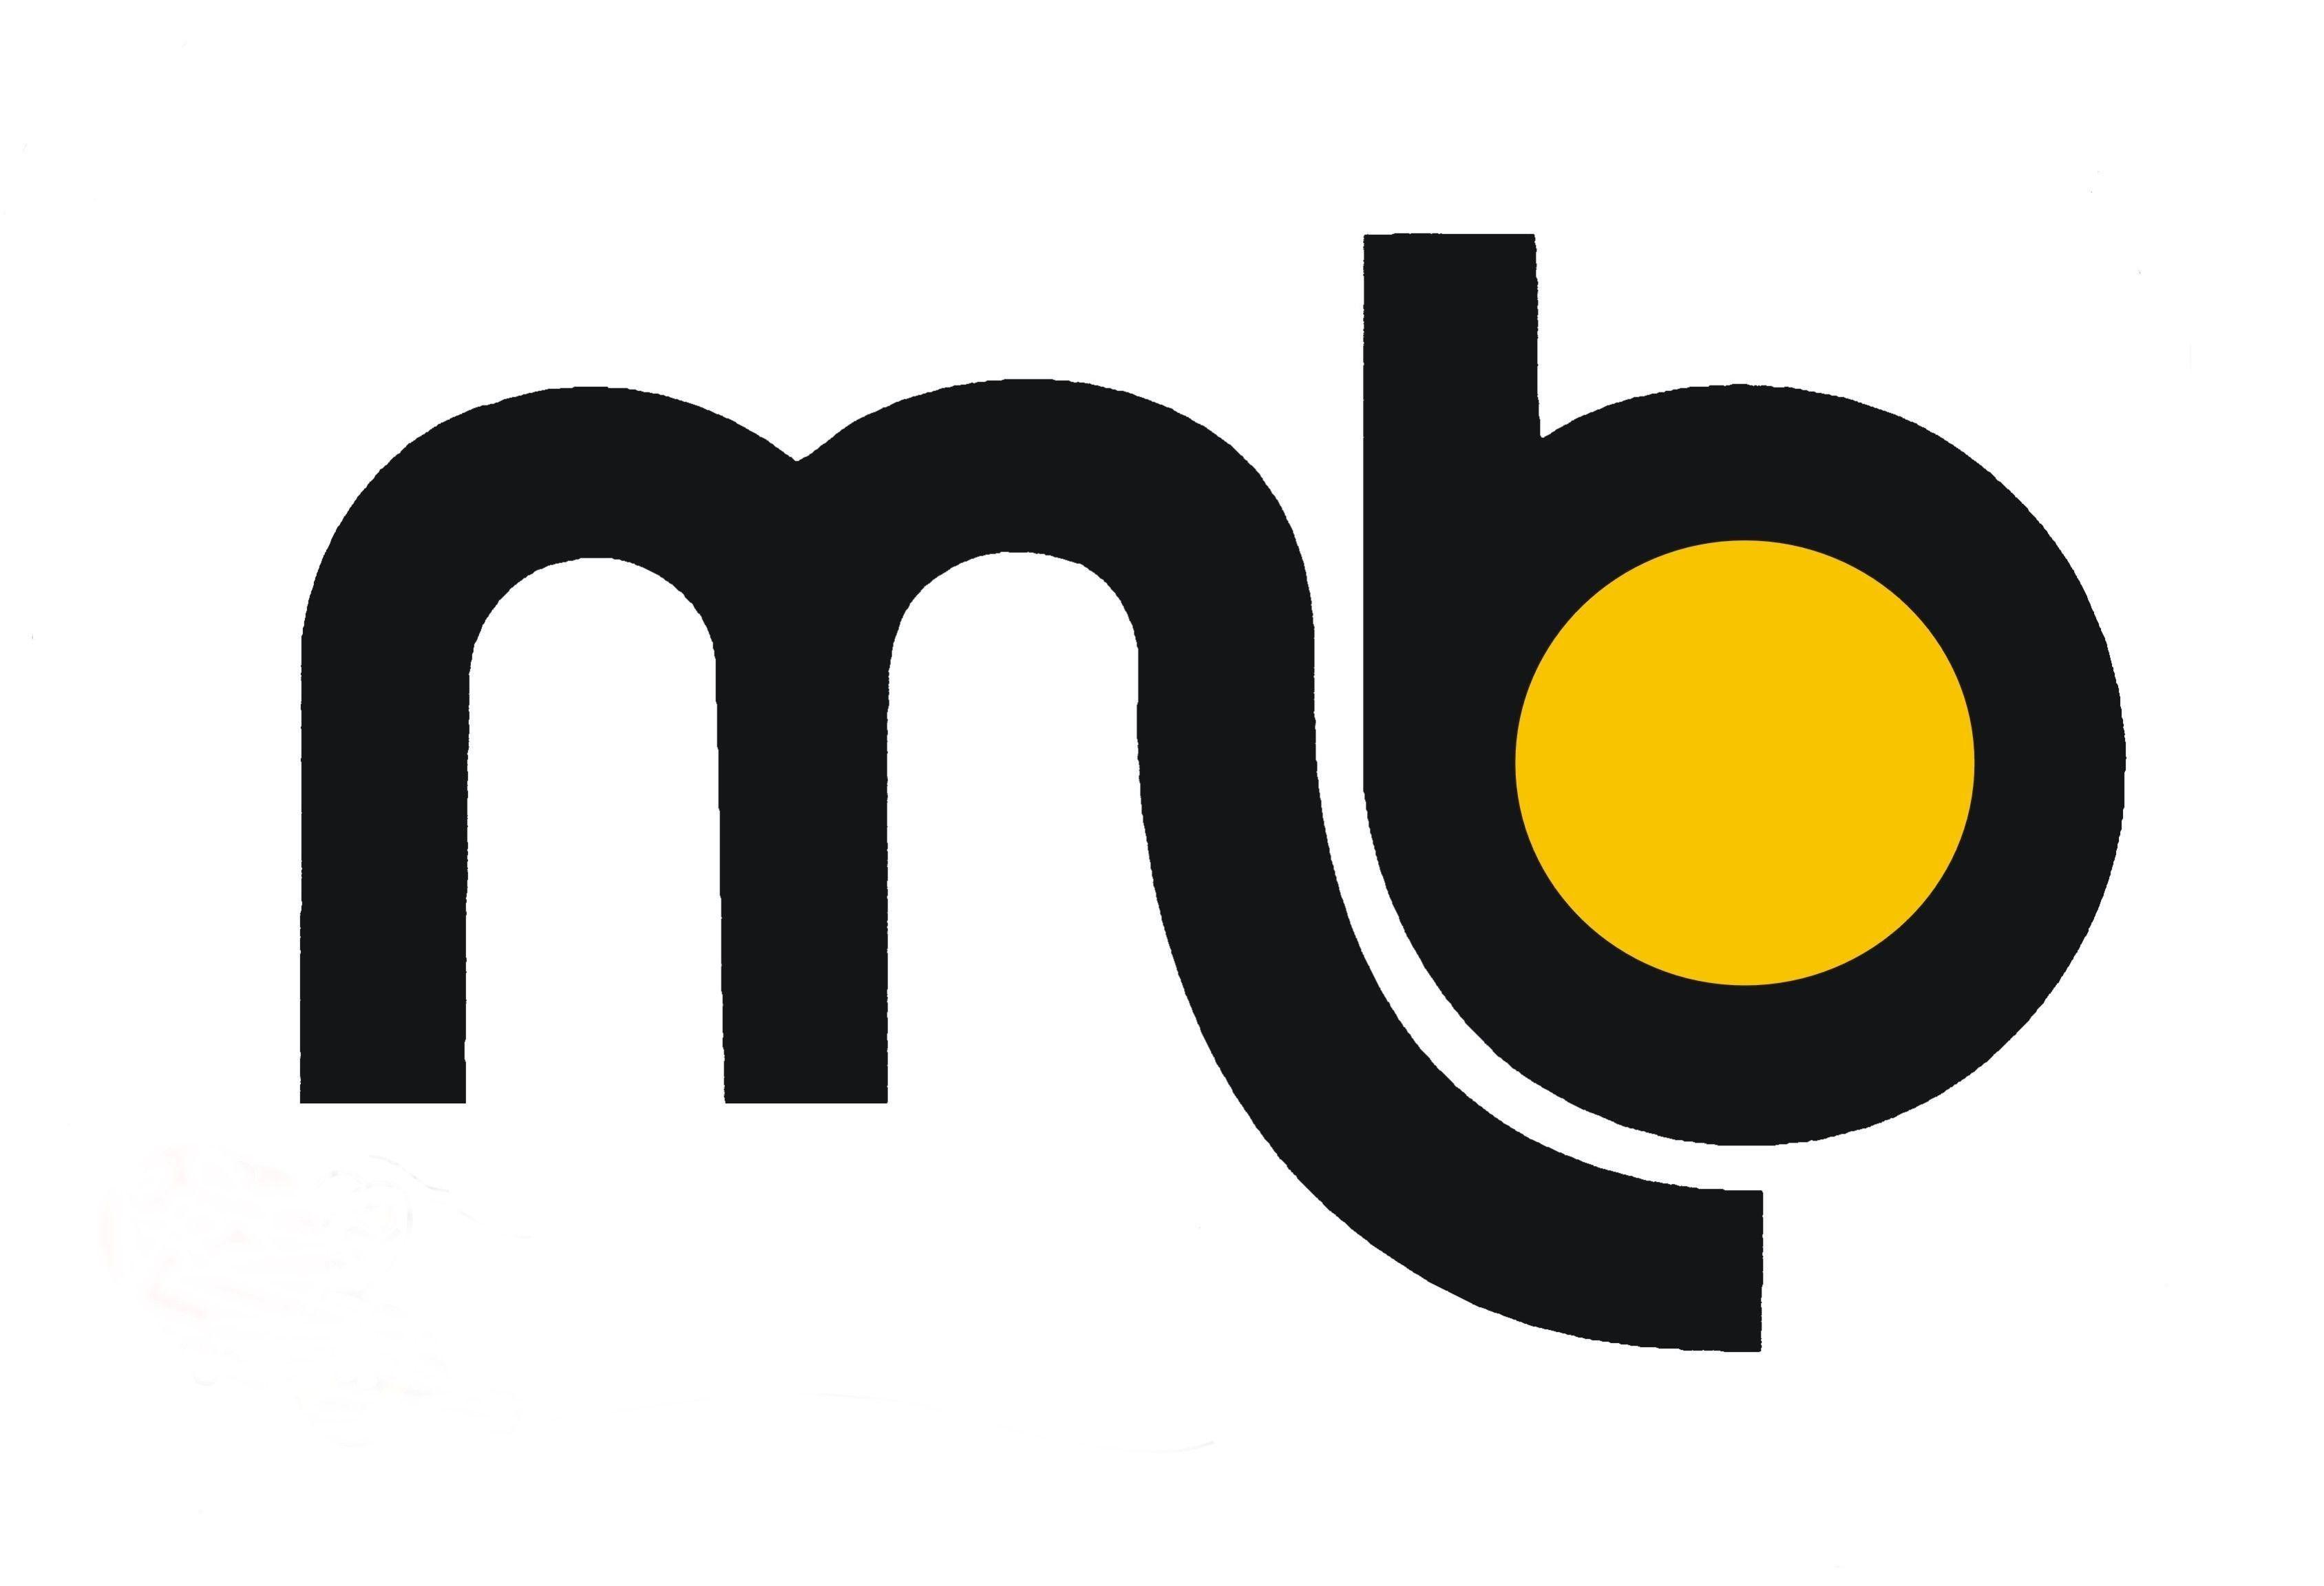 MB Logo - mb logo. Mb logo, Logos, Logo google